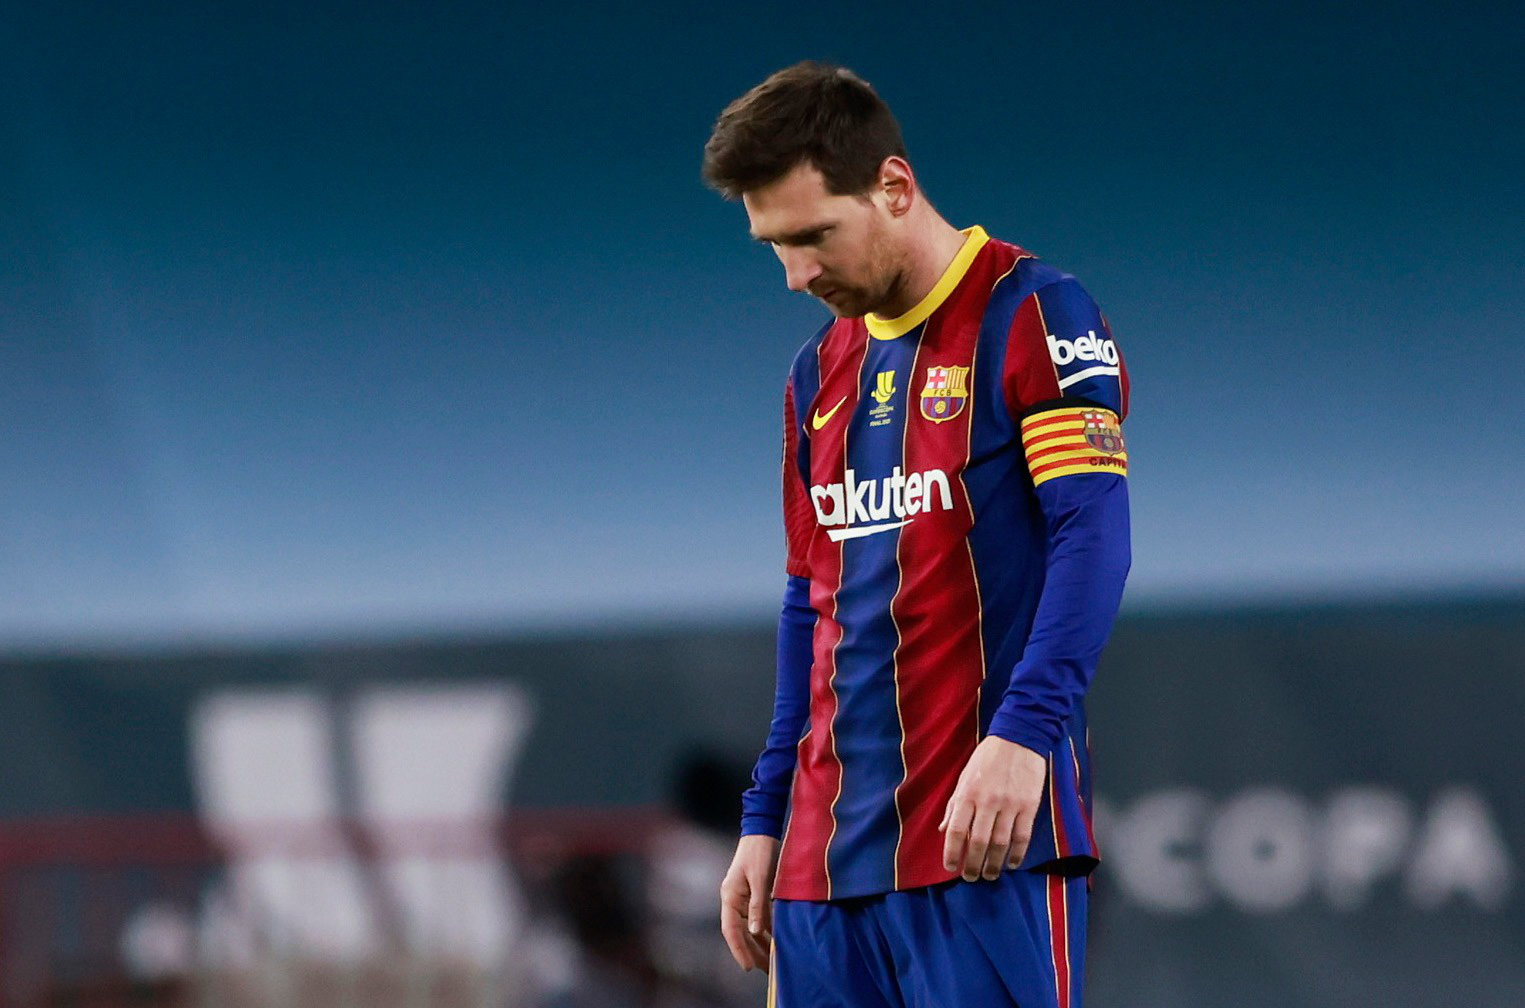 Barcelona gặp khó trong việc giữ Messi: Cùng đón xem hình ảnh và tìm hiểu những thông tin mới nhất về tình hình của CLB Barcelona trong việc giữ chân Lionel Messi. Quyết định của Messi sẽ ảnh hưởng như thế nào đến sự phát triển của Barca trong tương lai? Mời các bạn đến để khám phá!